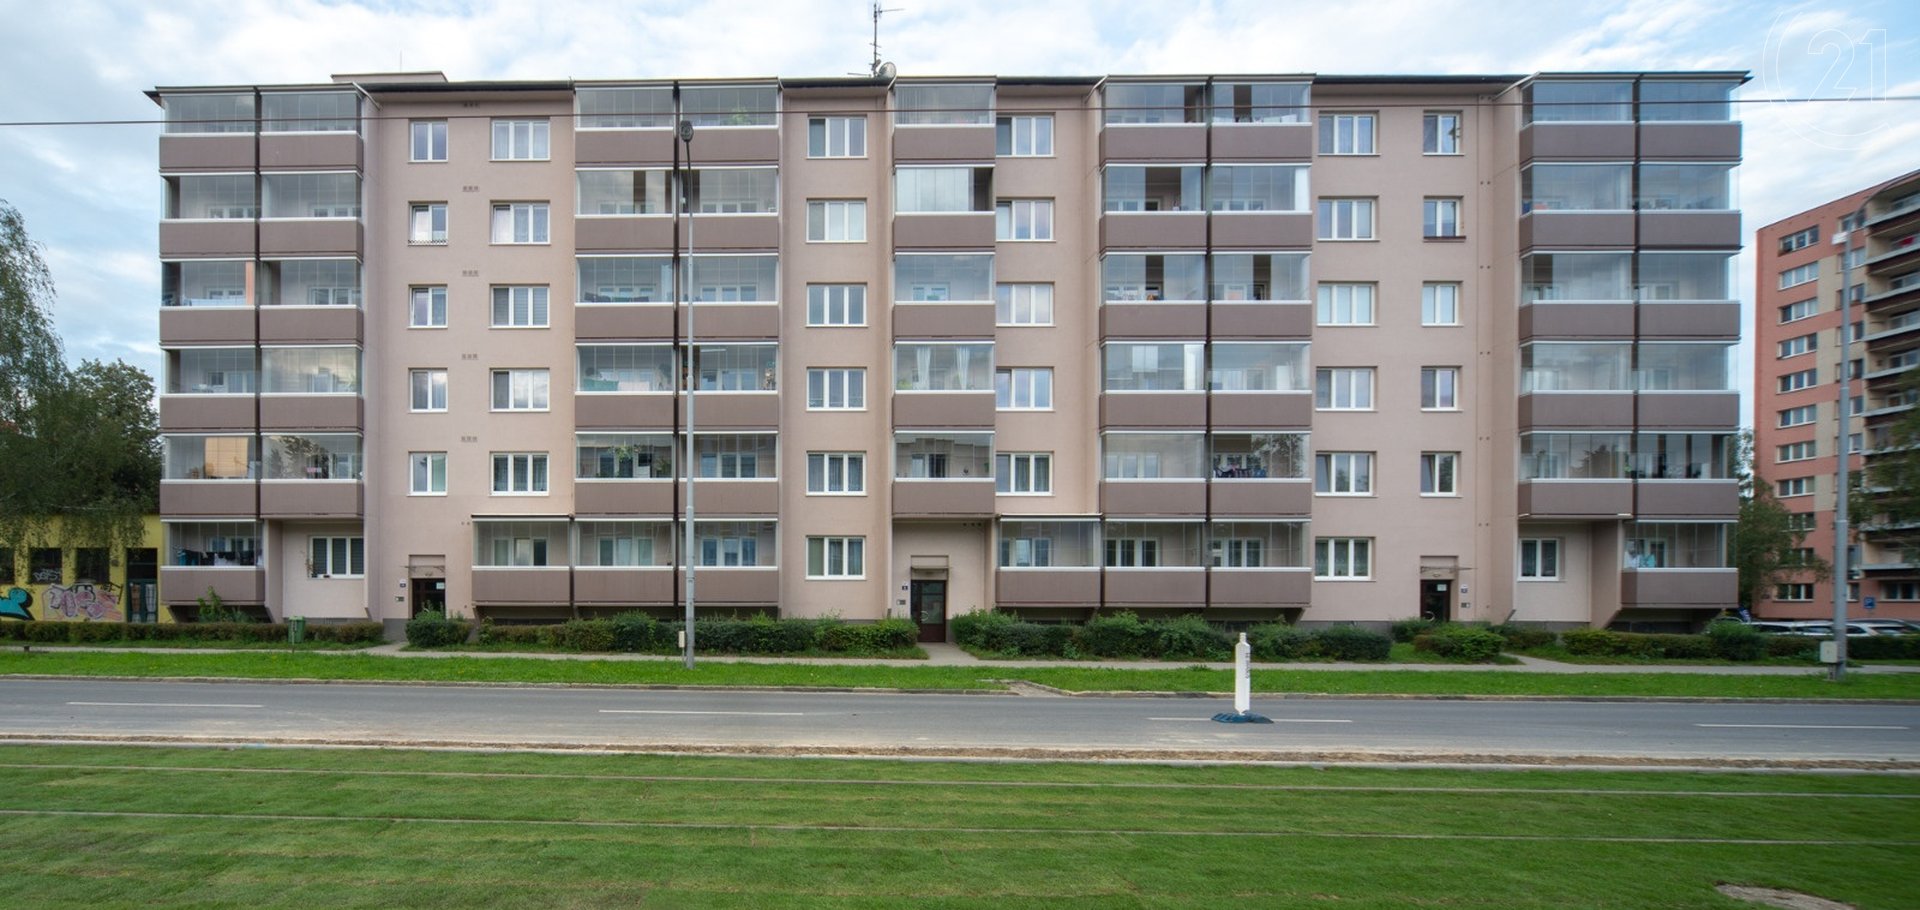 Družstevní byt 1+1 se zasklenou lodžií v centru Poruby v Ostravě.